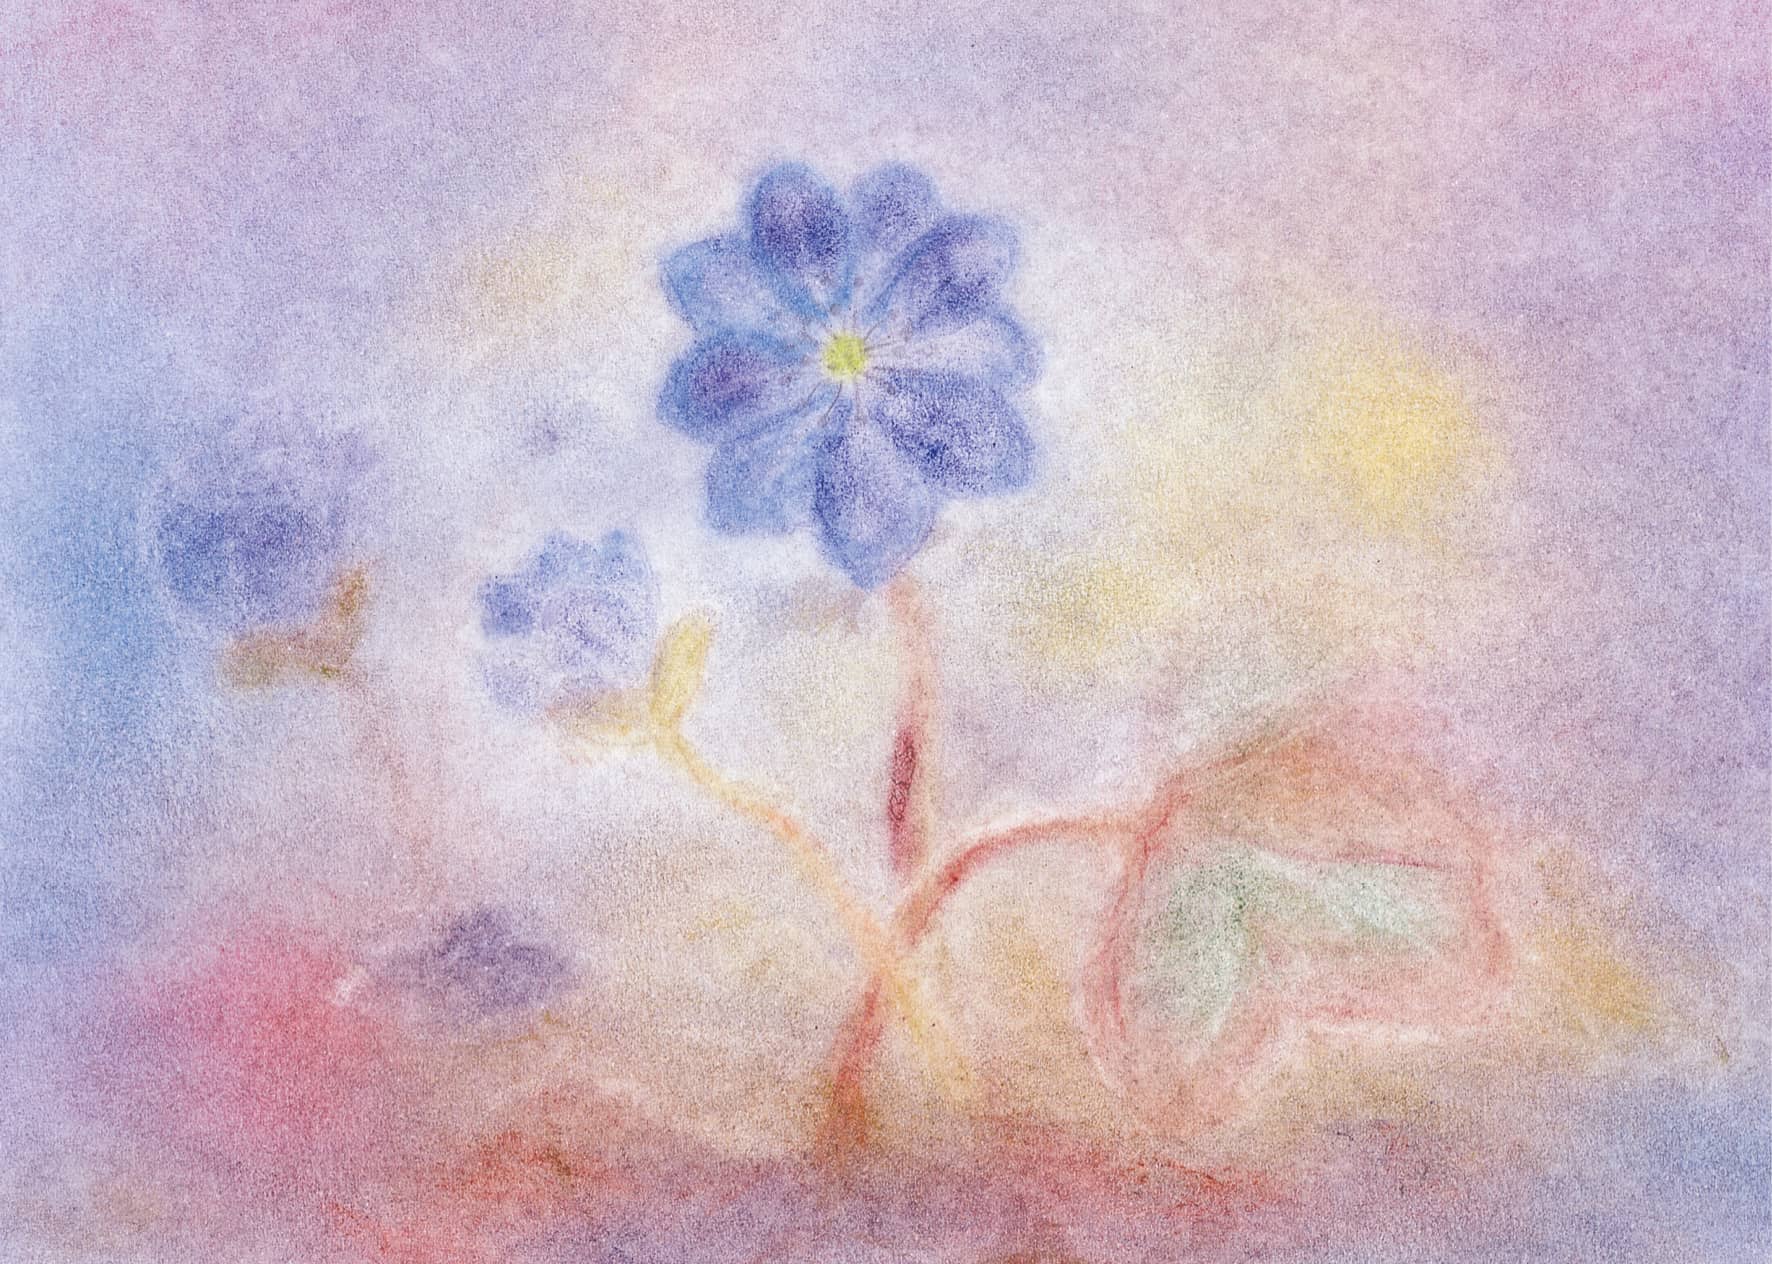 Seccorell Postkarte "Leberblümchen" zeigt zarte florale Schönheit im Frühjahr in weichen Seccorell-Farbverläufen.